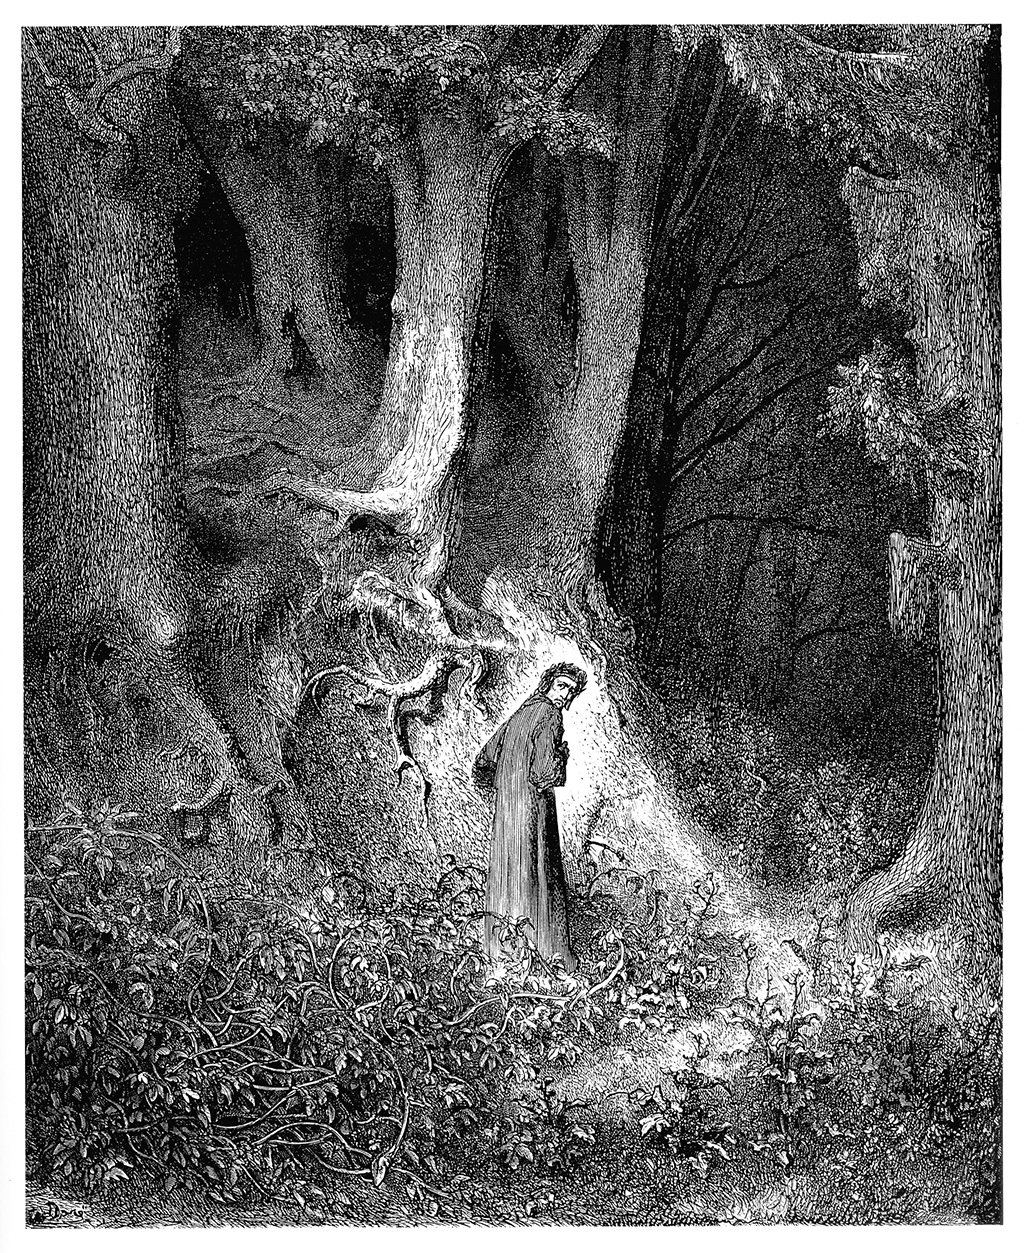 Figura 1 – I primi versi dell’Inferno dantesco nell’illustrazione di Gustave Doré del 1861.